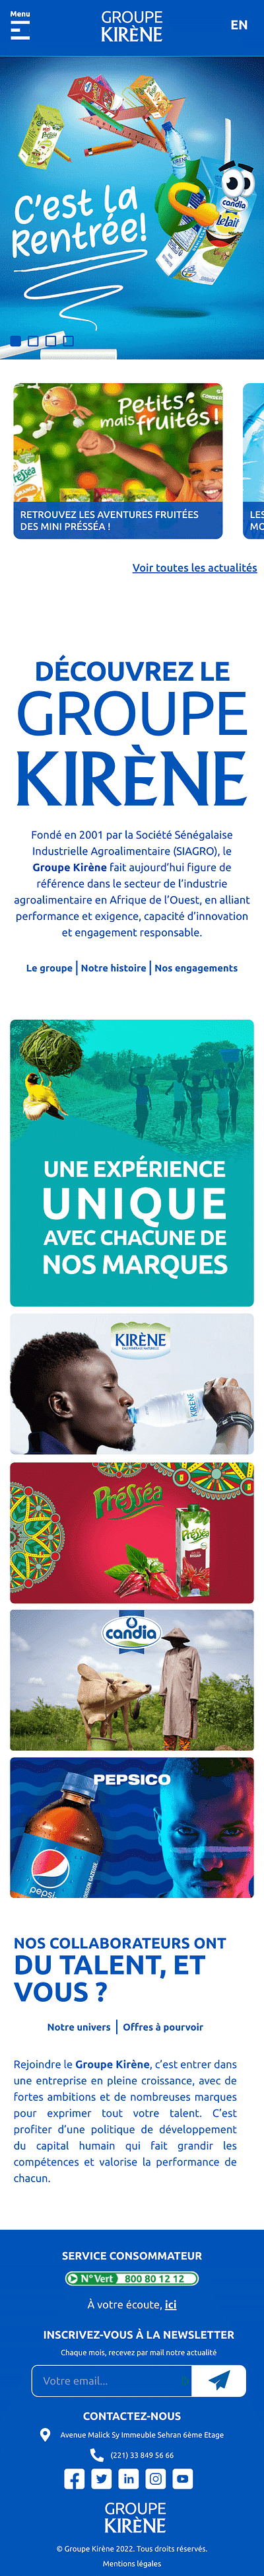 Refonte du site internet du Groupe Kirène - Webseitengestaltung